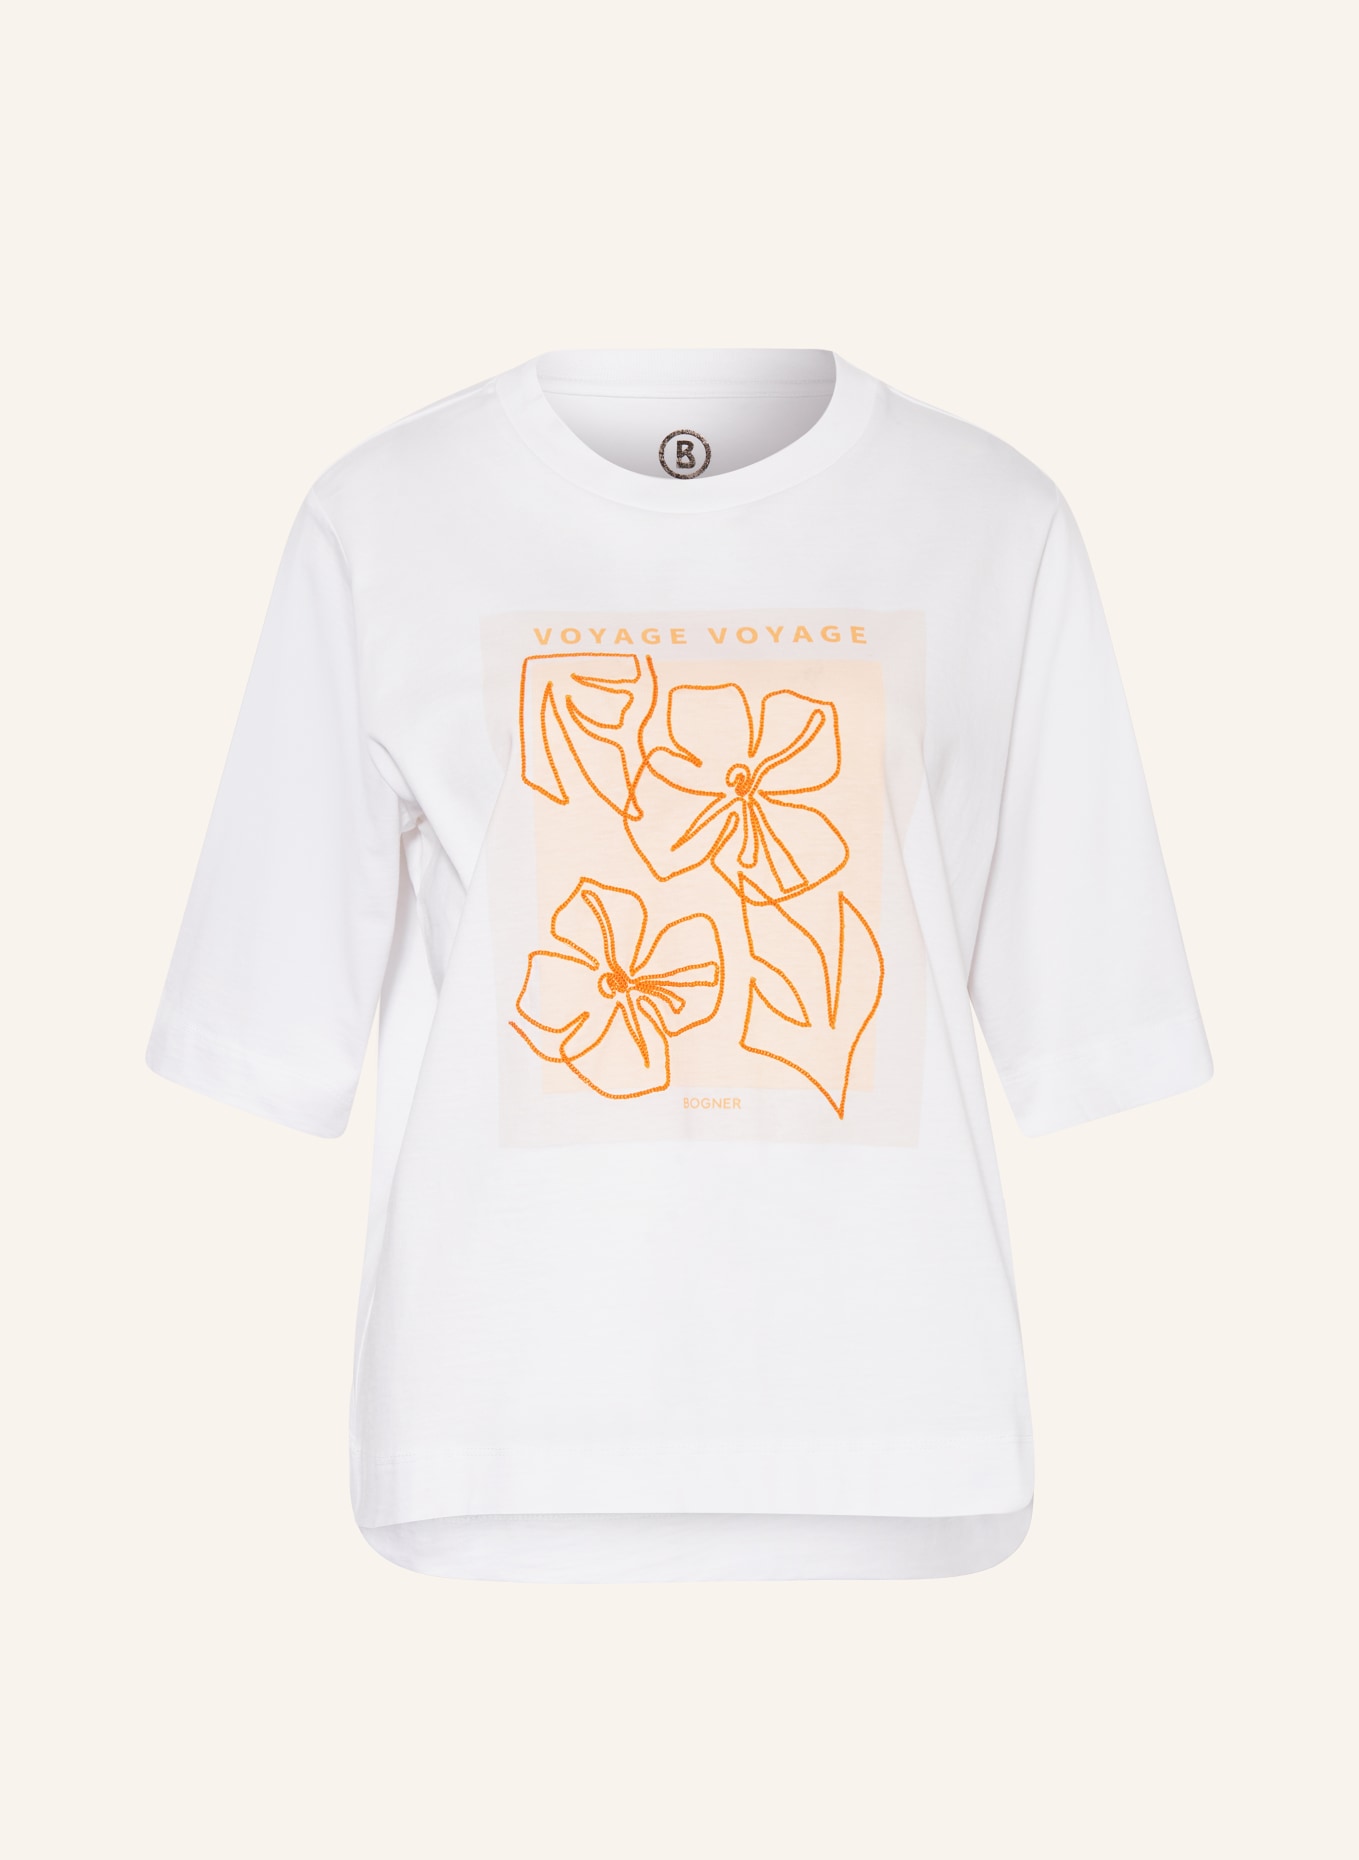 BOGNER T-shirt DOROTHY, Color: WHITE (Image 1)